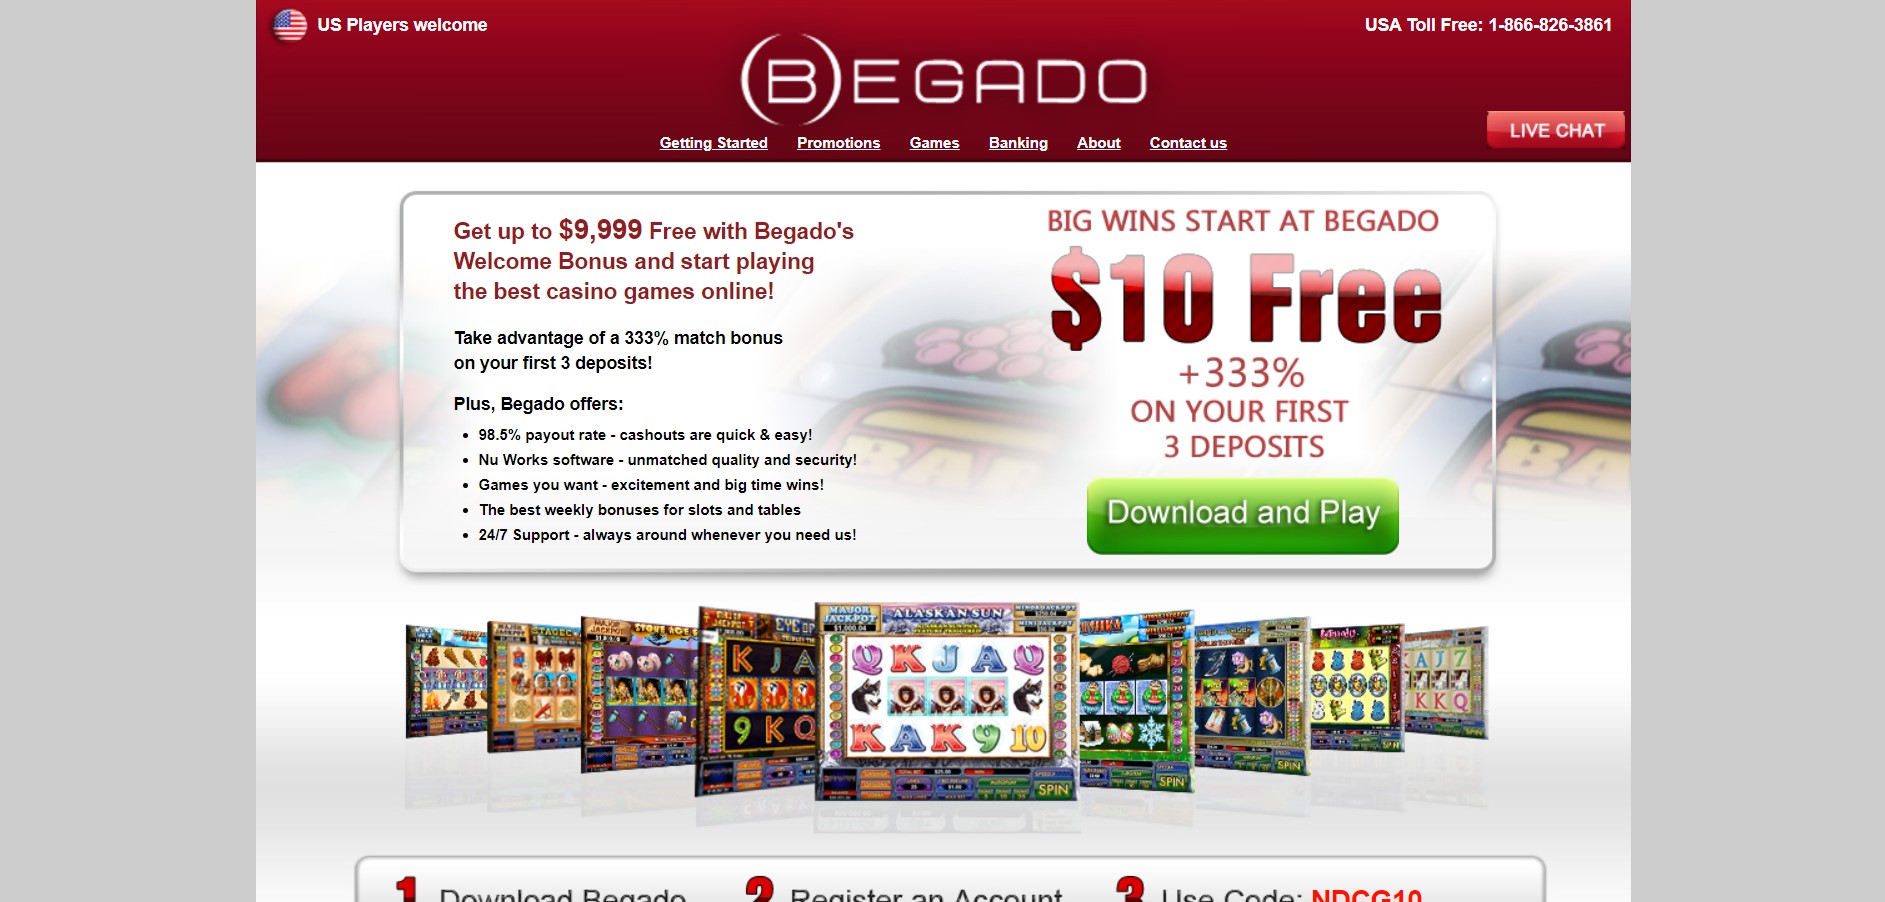 Begado online casino review